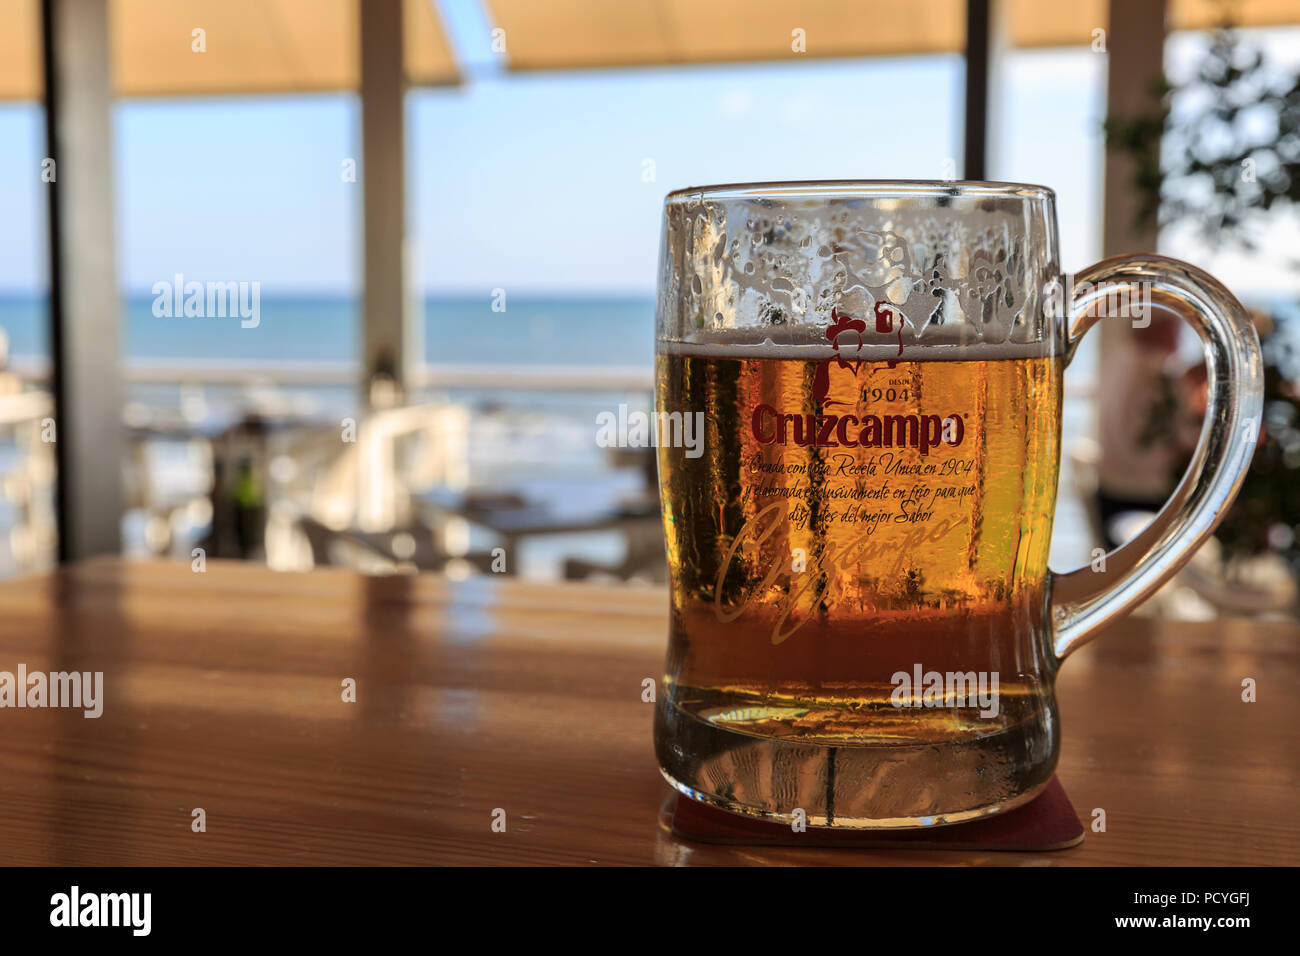 Una bebida en la barra de un chiringuito (bar de playa) en la Costa del Sol, España, con el Mediterráneo al fondo Foto de stock